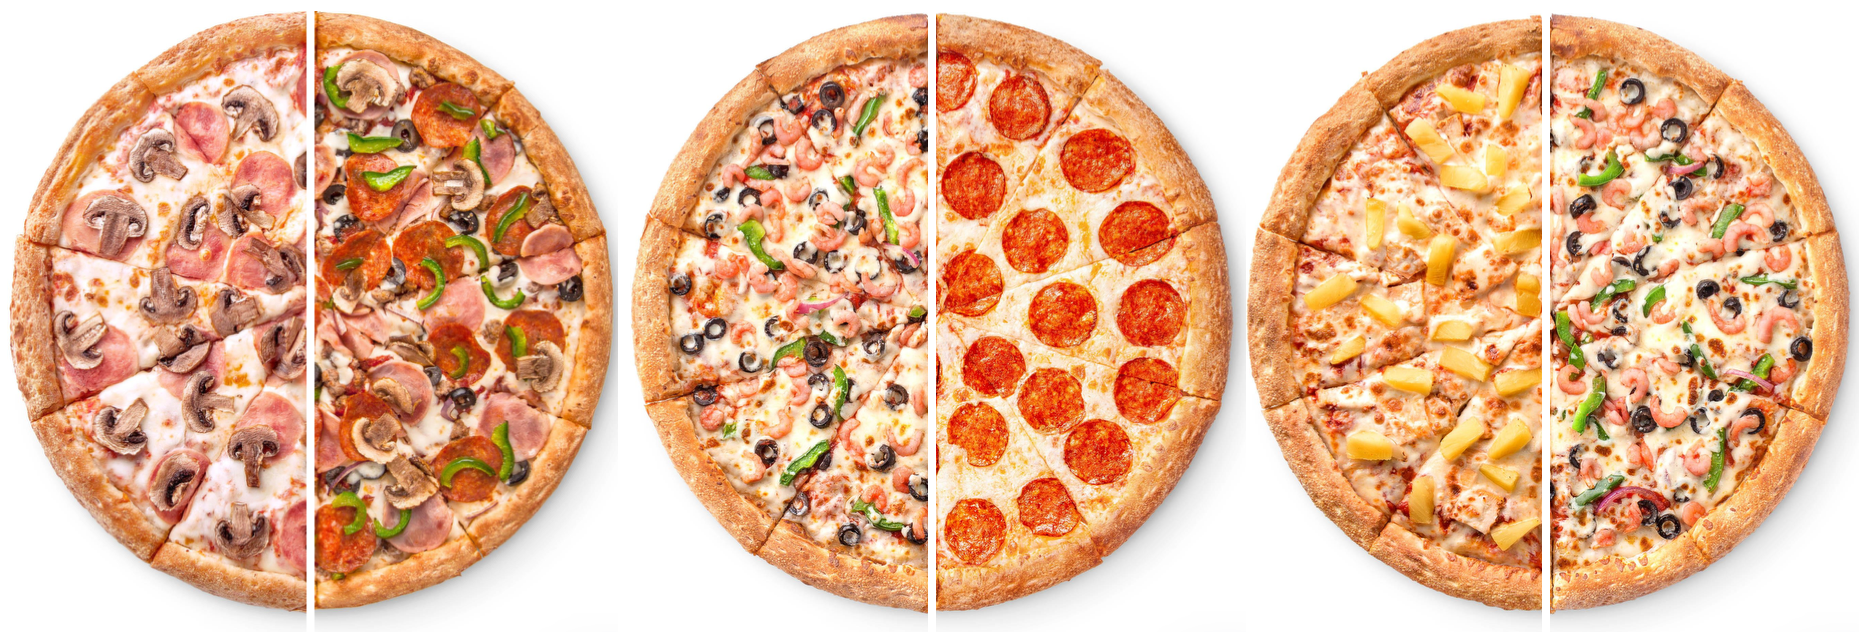 Как не ошибиться при выборе доставки пиццы?